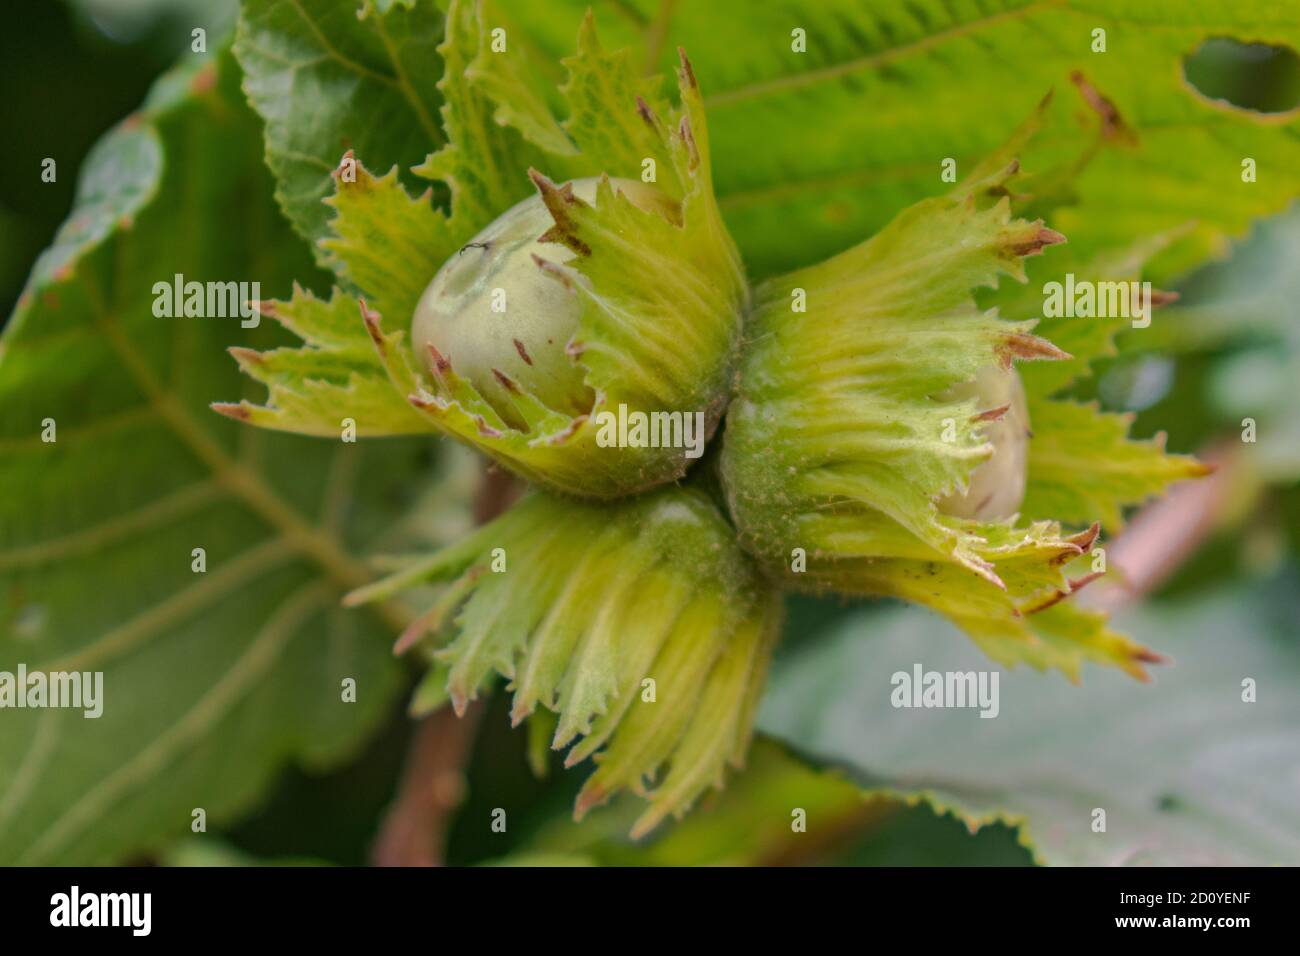 Close up of unripe hazelnuts on tree, Corylus avellana fruitage Stock Photo